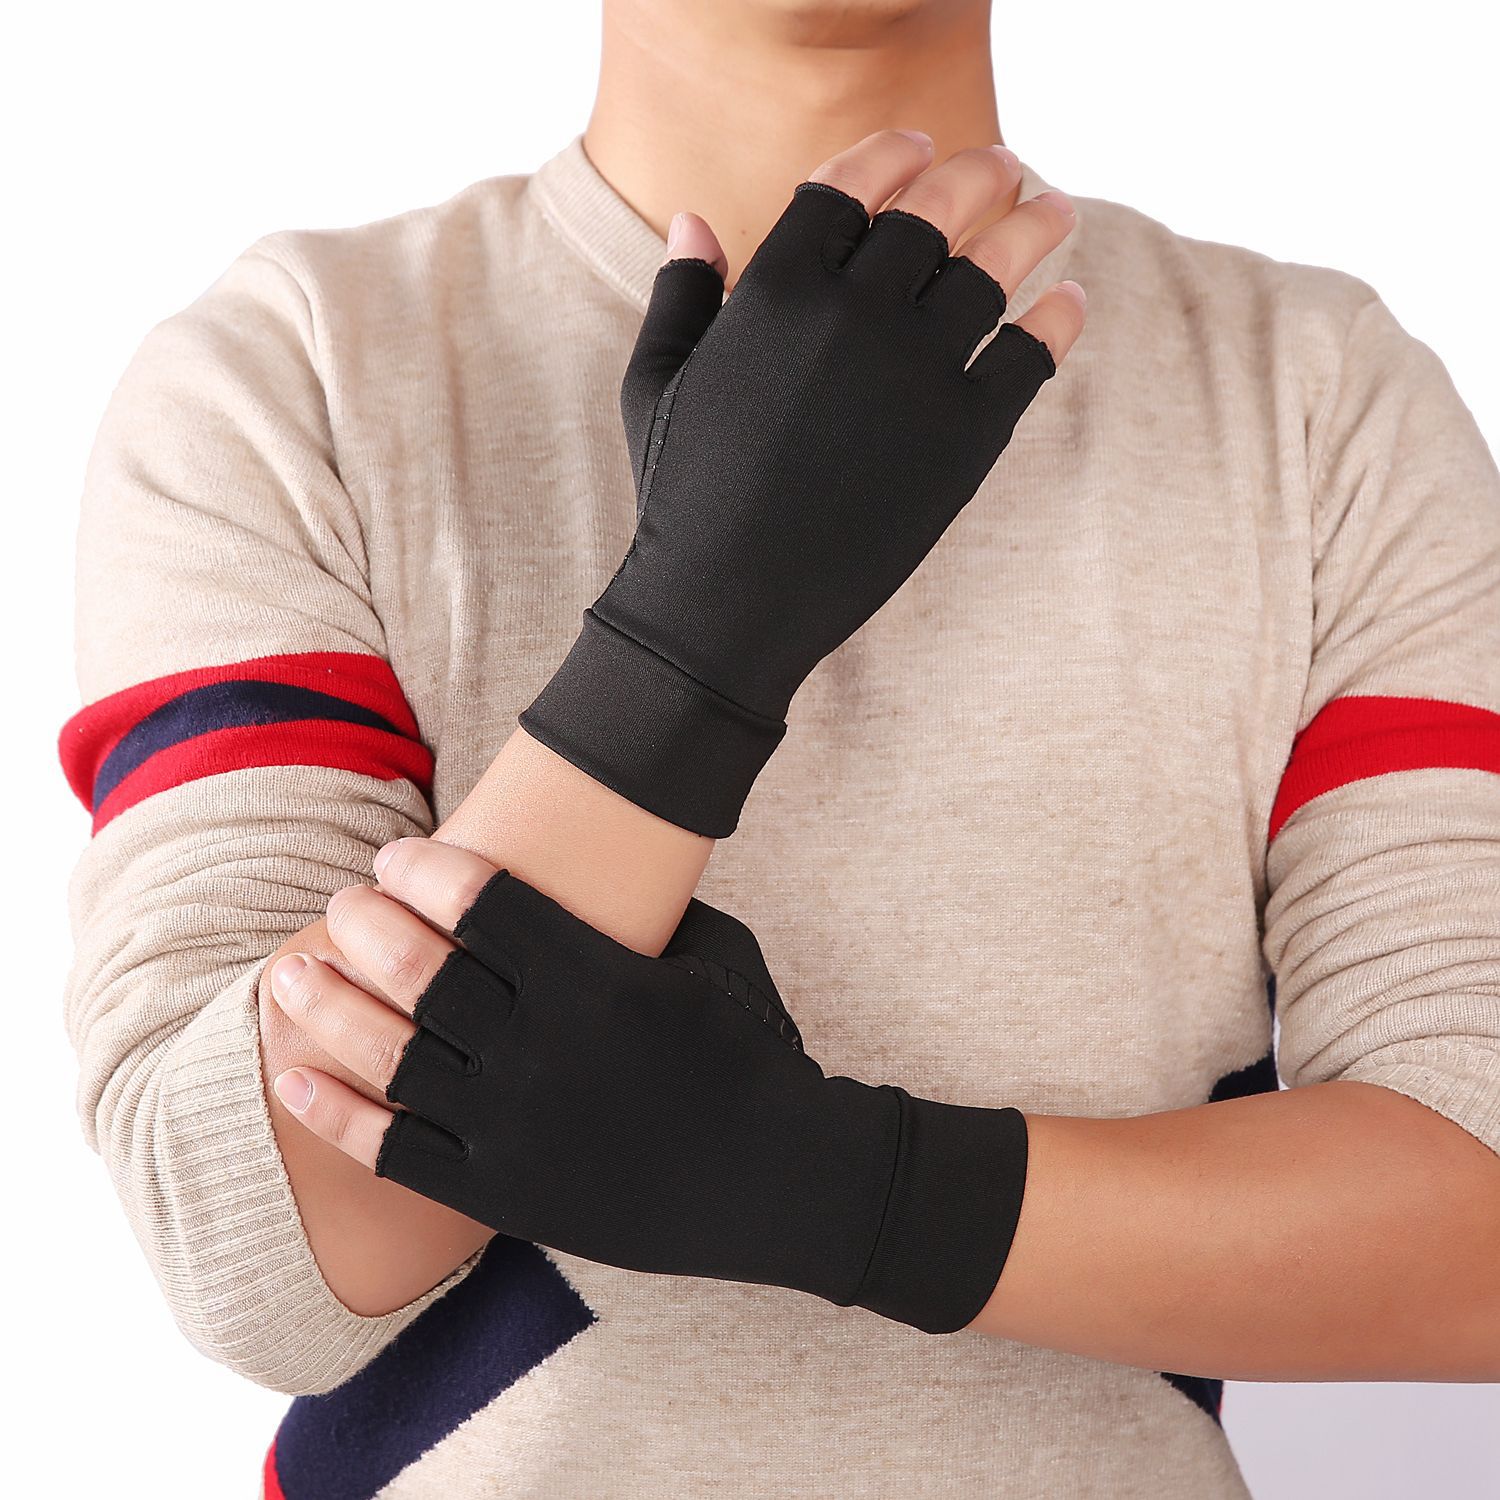 厂家室内男女运动铜纤维护理露指手套康复训练压力手套批发